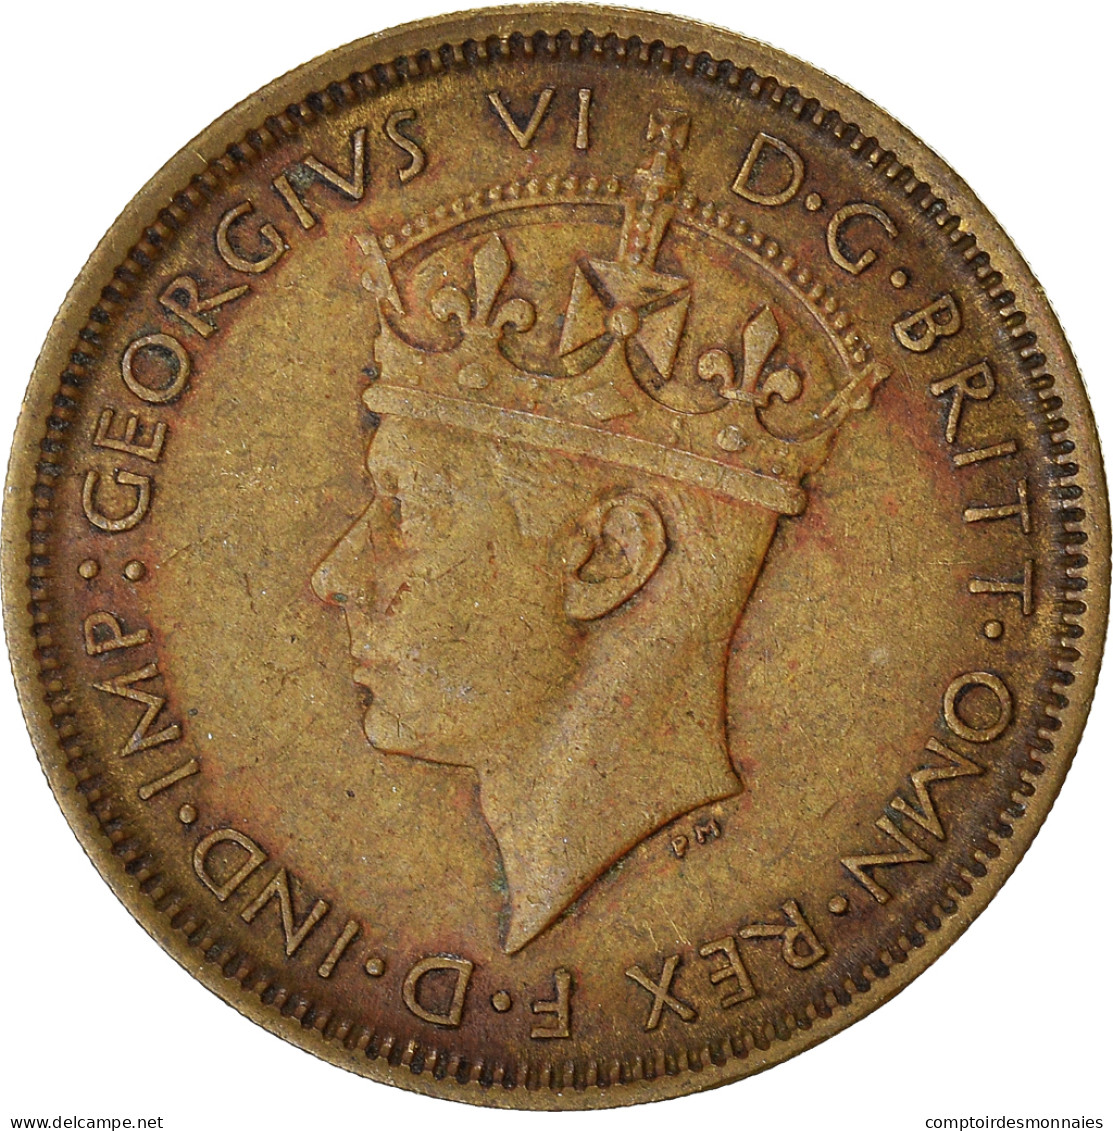 Monnaie, Afrique Occidentale Britannique, Shilling, 1943 - Kolonien